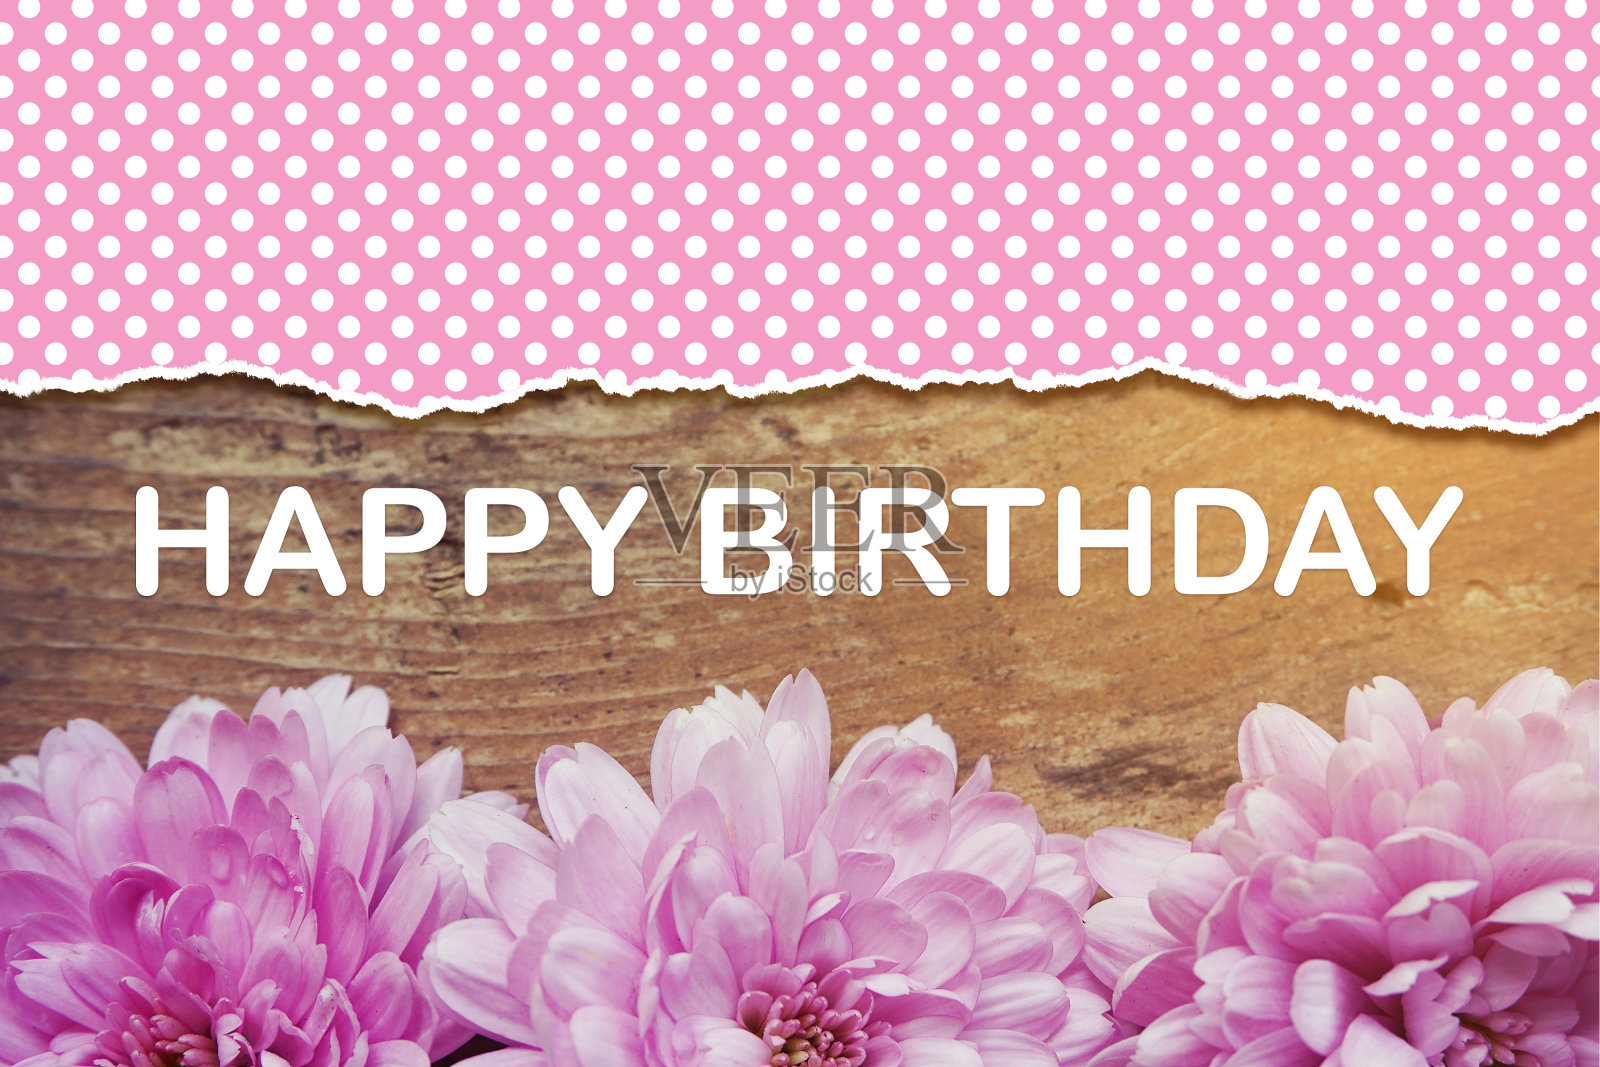 木制的粉红色花朵上写着生日快乐照片摄影图片